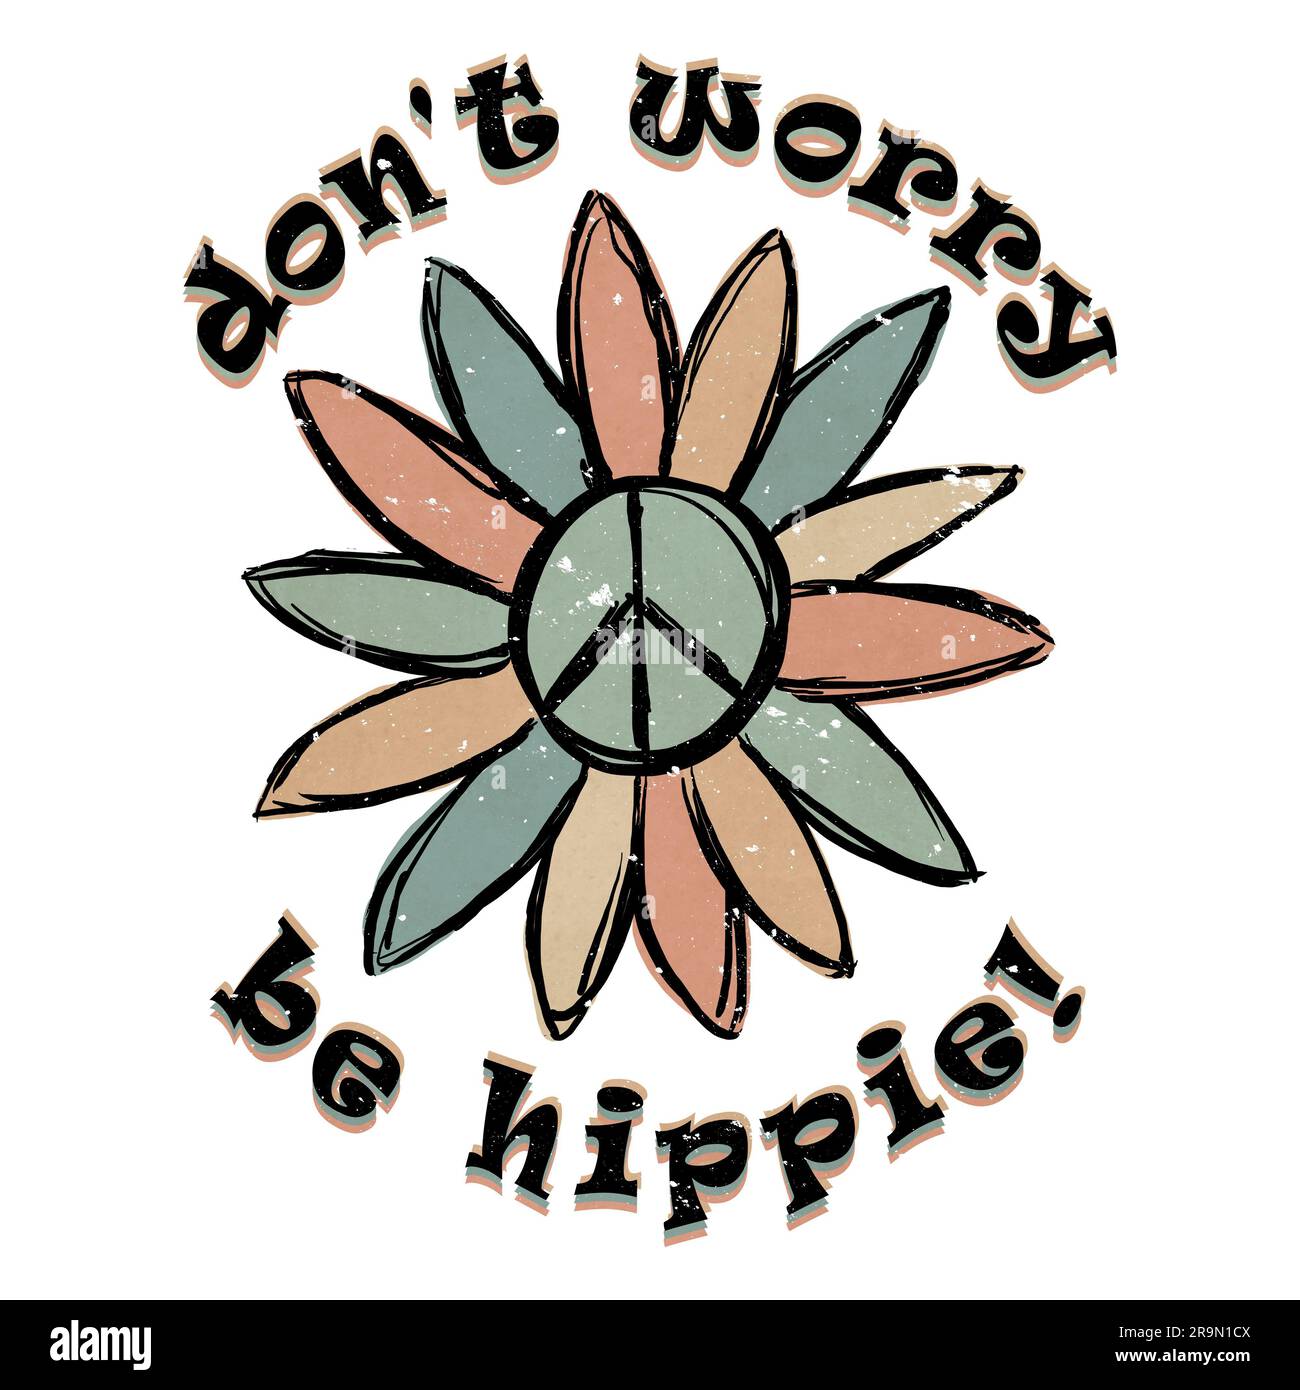 Non preoccuparti - Be Hippie - carino retro Grunge Peace Sign Flower Foto Stock